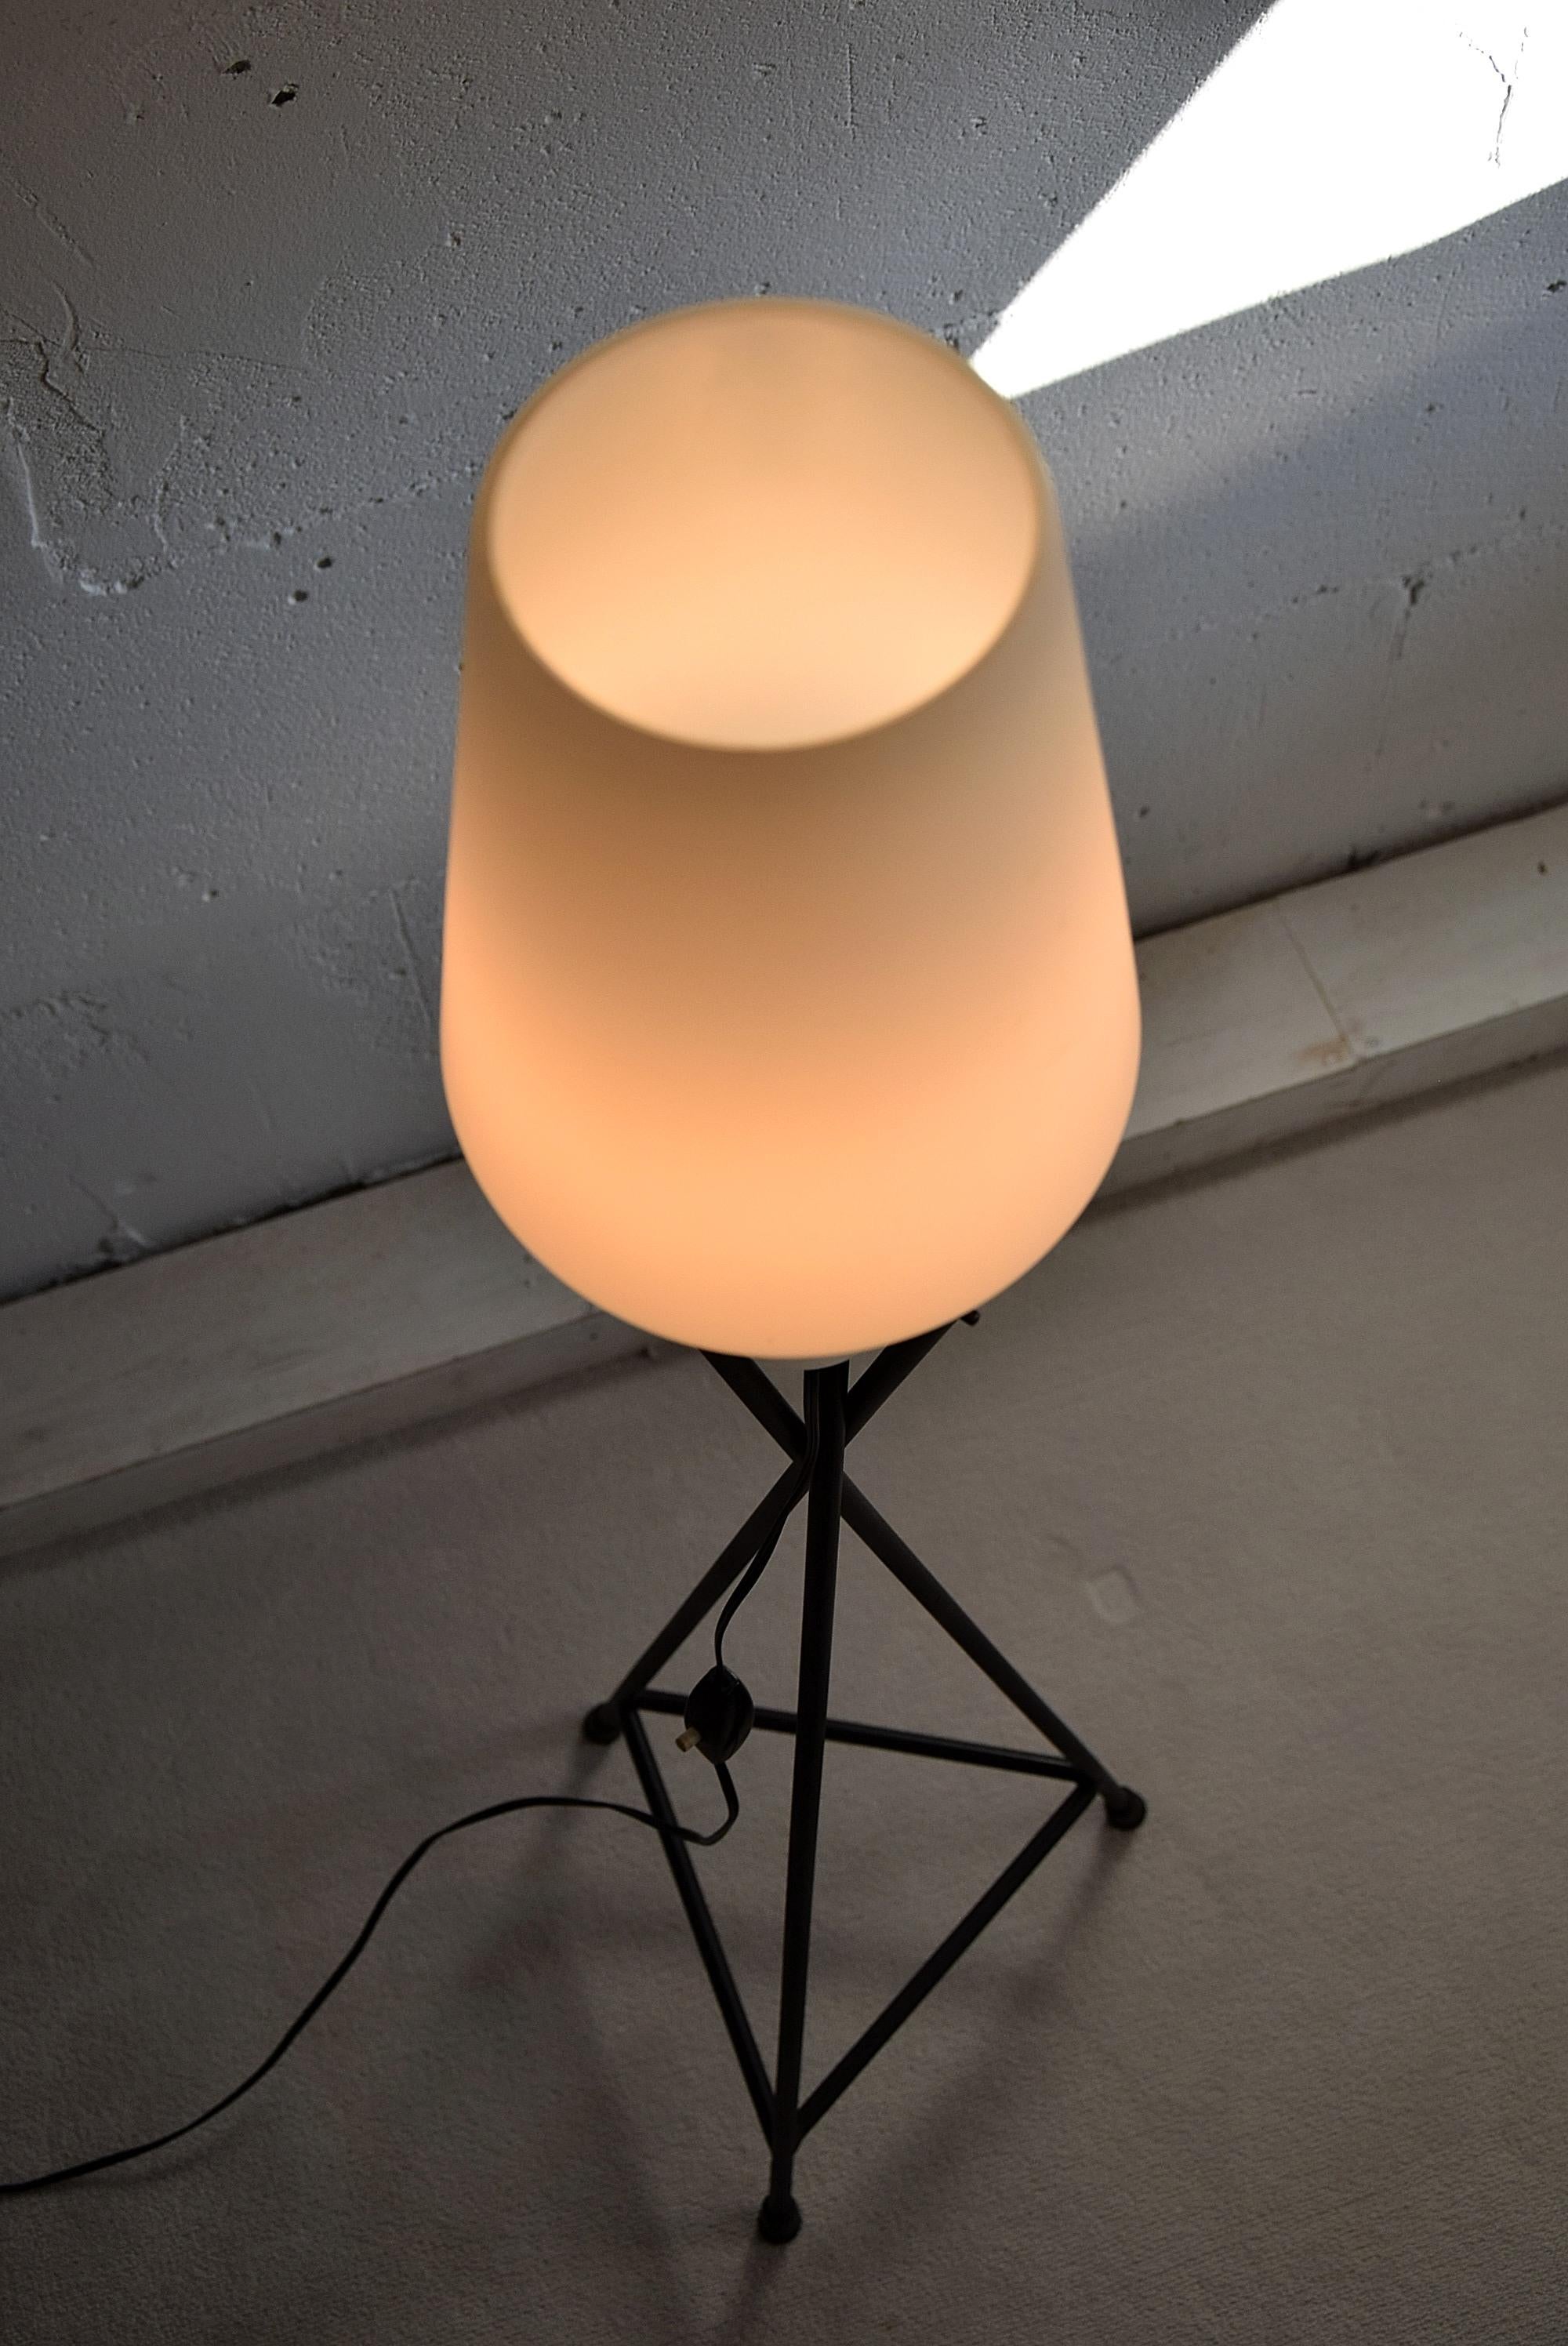 Mid-20th Century Italian Mid-Century Modern Floor Lamp For Sale